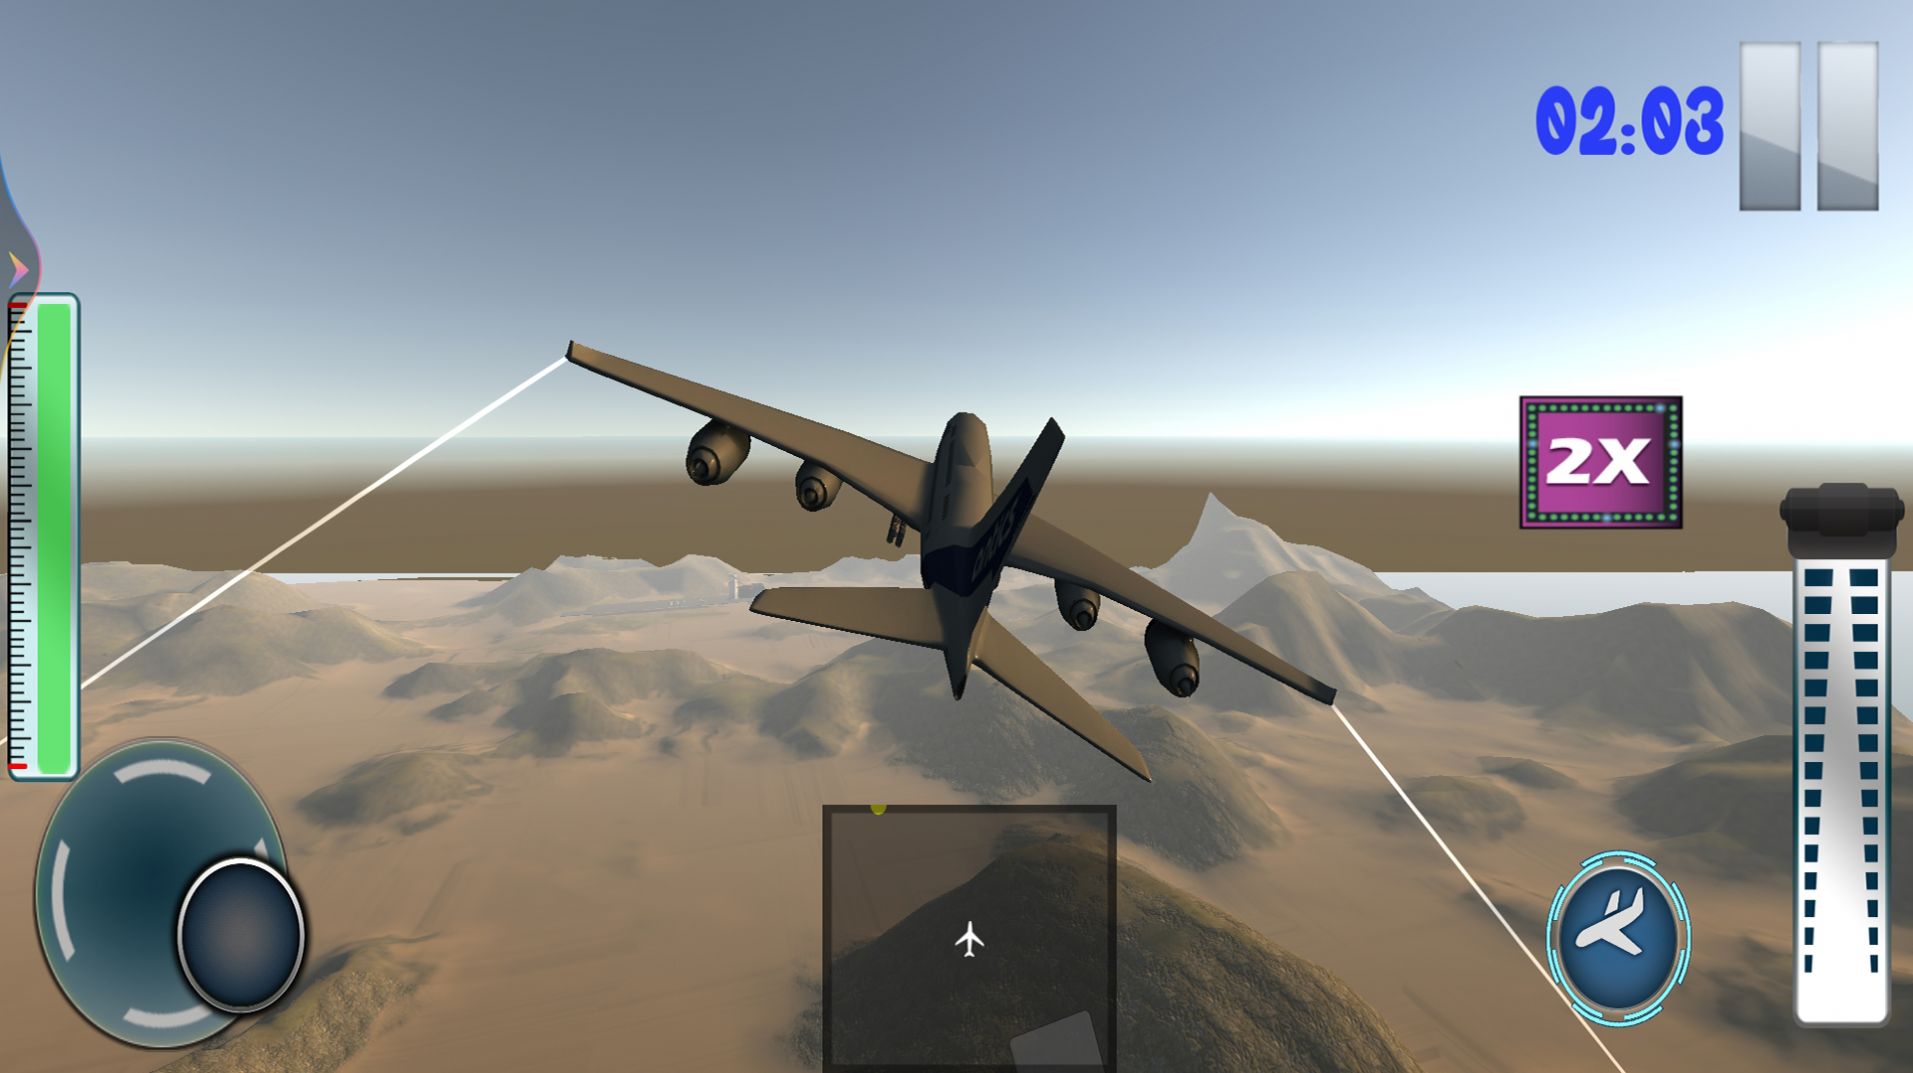 迷你飞机驾驶模拟器游戏图1